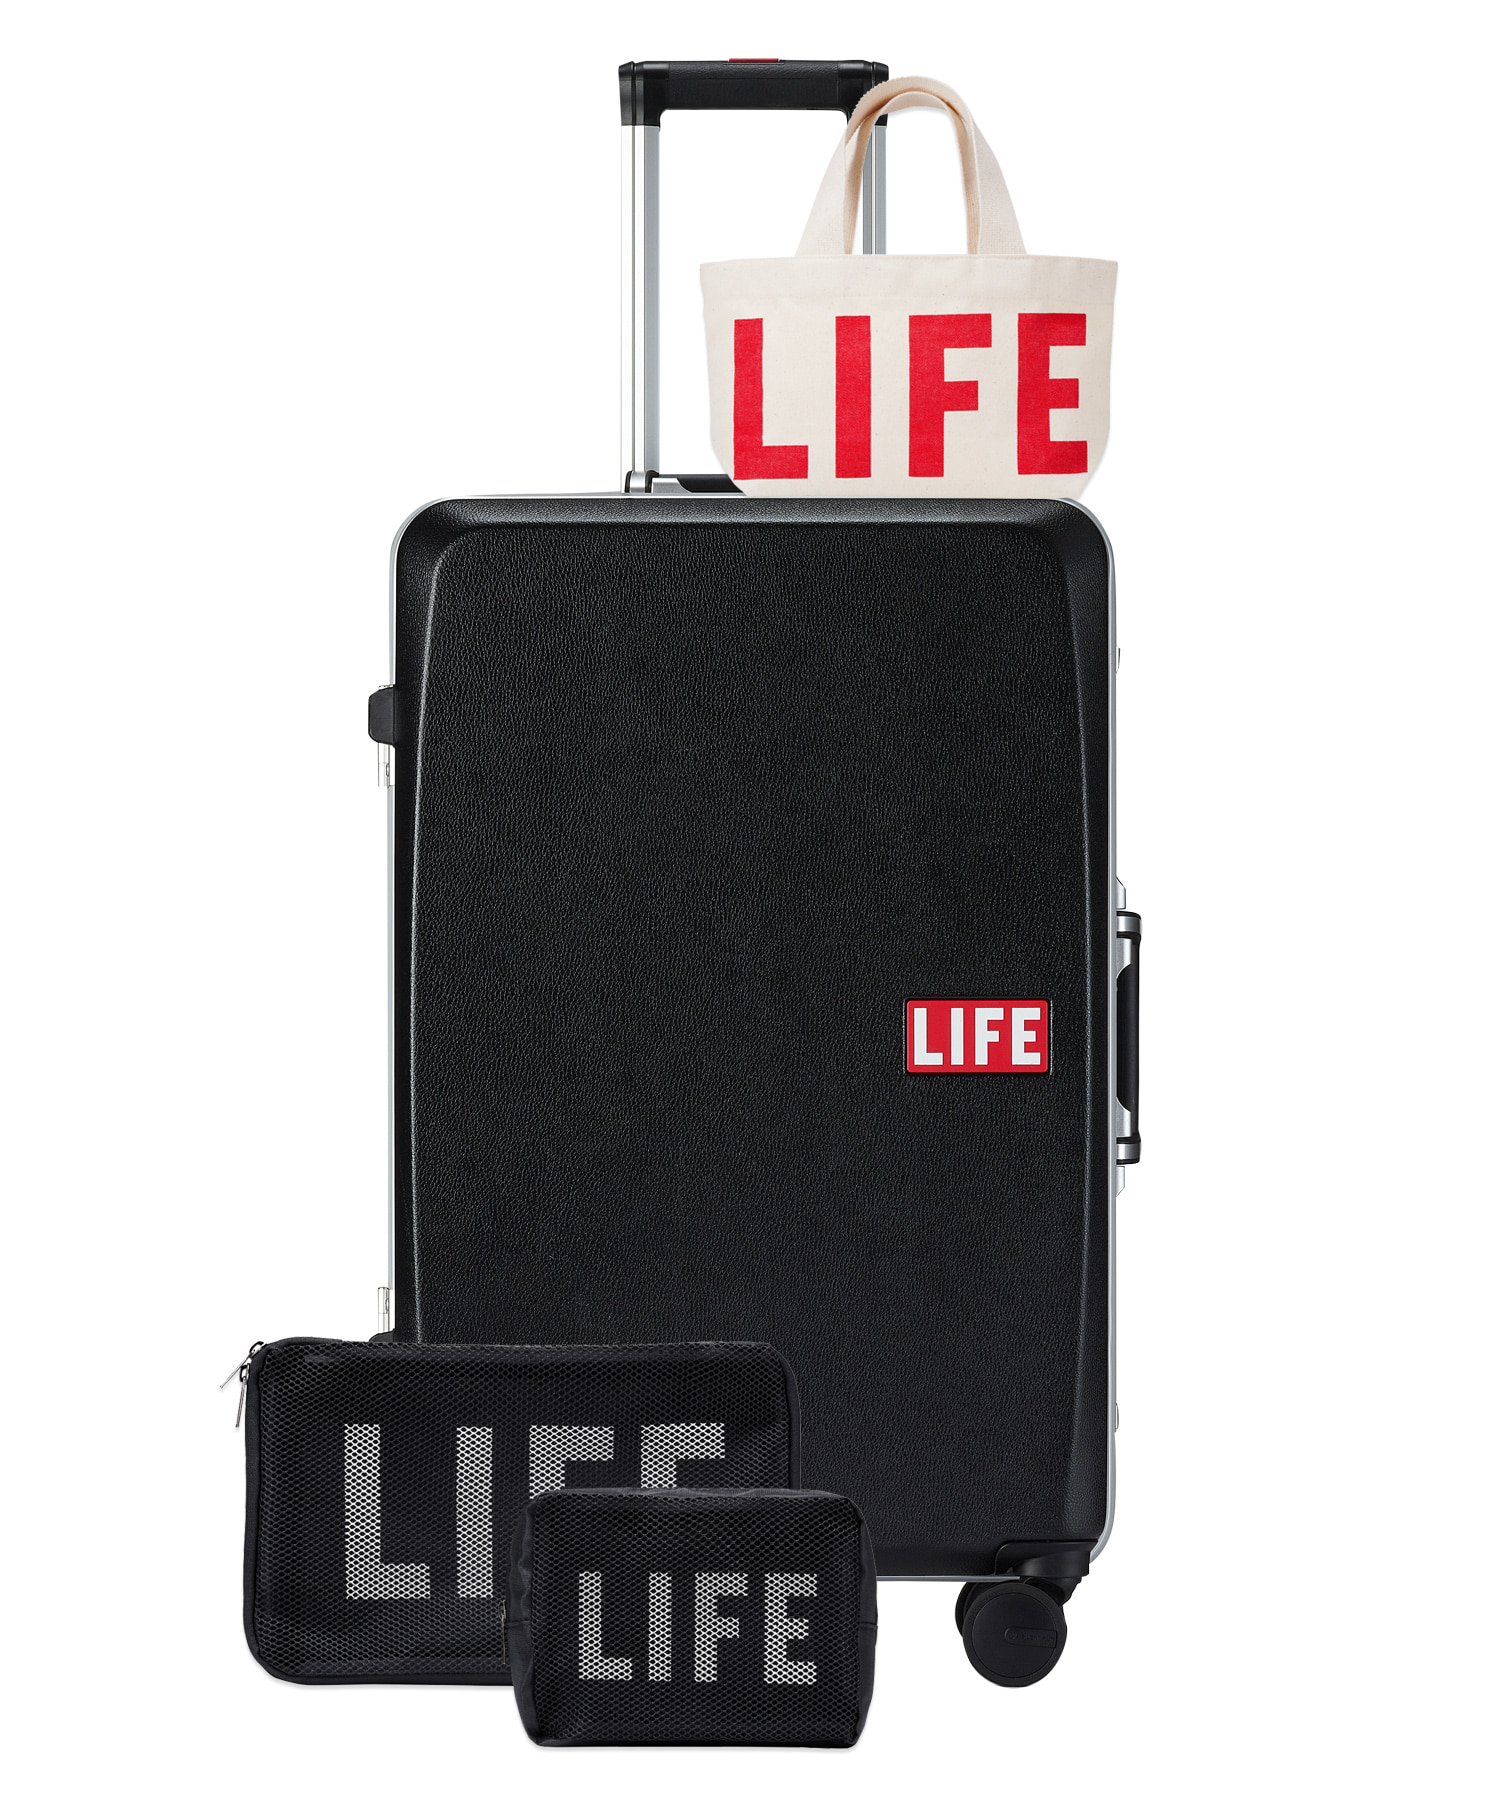 자체브랜드 [회원전용혜택]LIFE CLASSIC LUGGAGE 96L_BLACK 라이프,LIFE, LIFE ARCHIVE, 일회용 카메라, 카메라